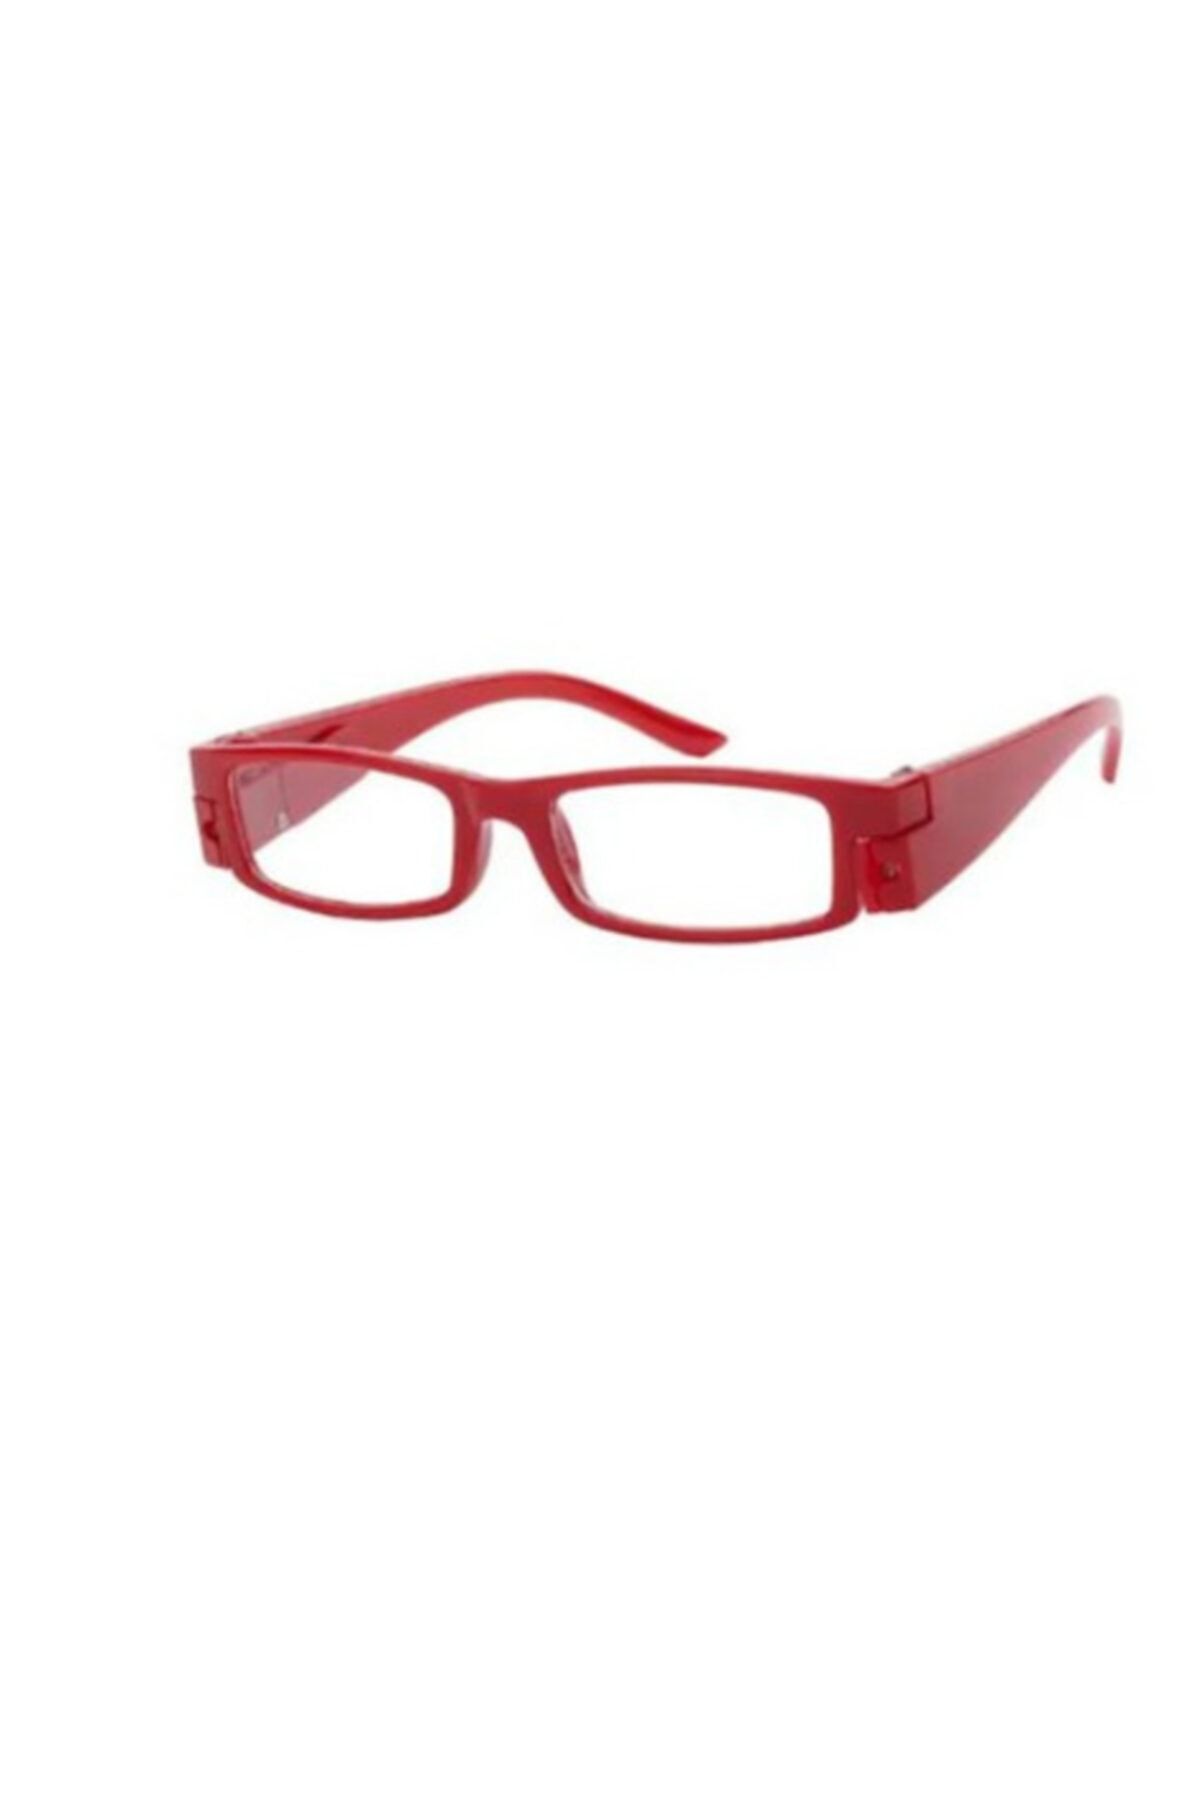 ELBA Led Işıklı Kitap Okuma Gözlüğü - Kırmızı